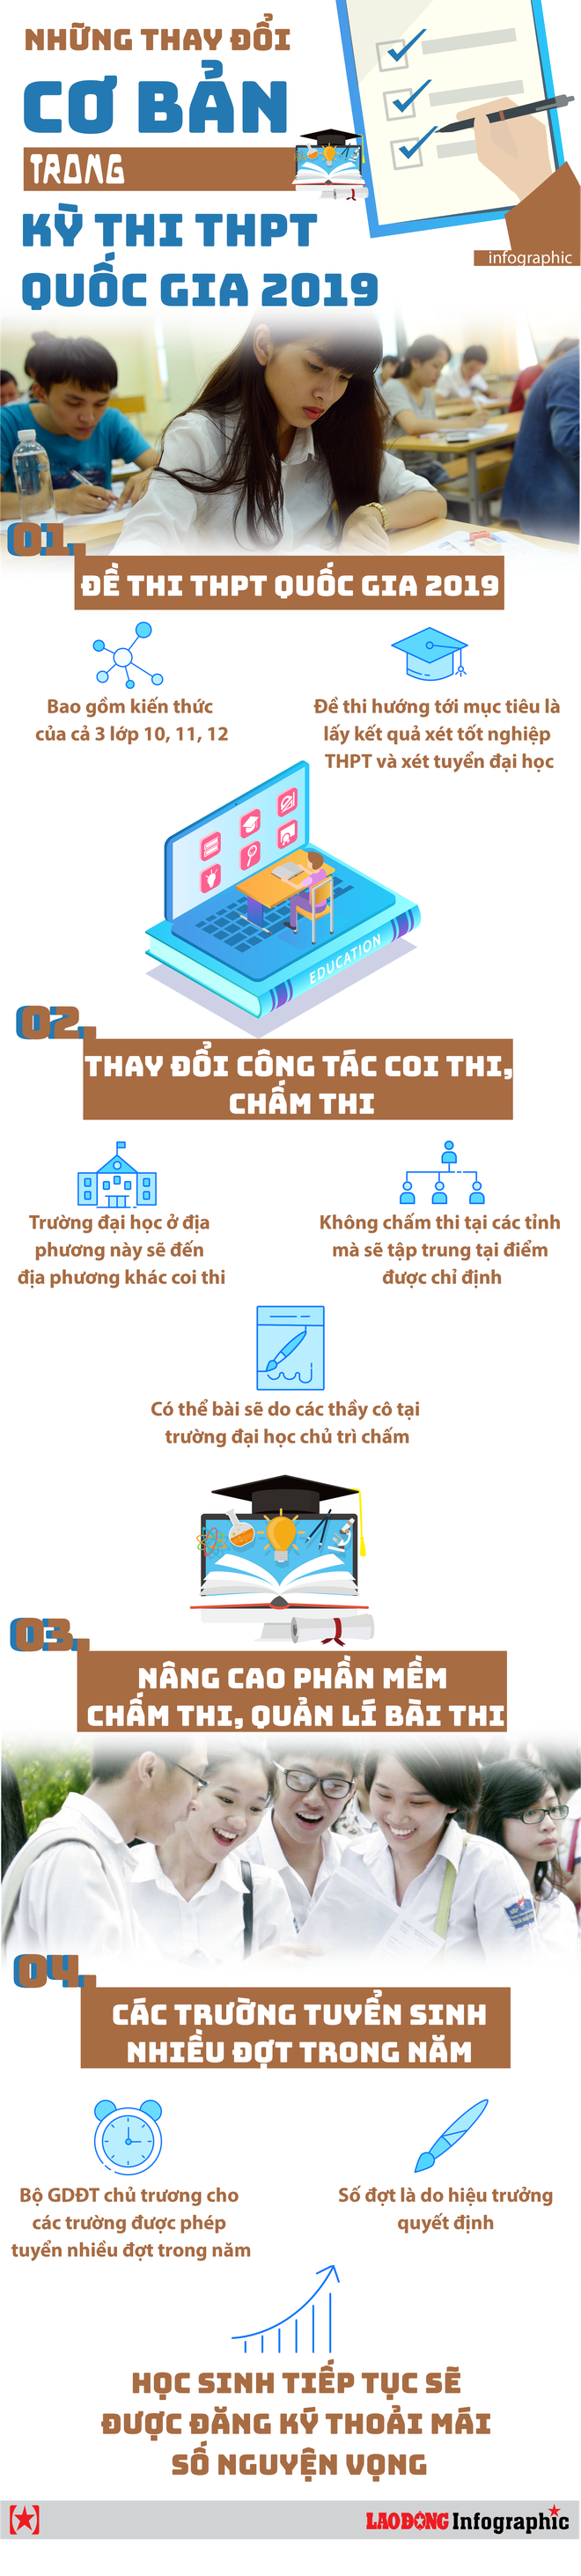 Infographic: Những thay đổi cơ bản trong kỳ thi THPT quốc gia 2019 - Ảnh 1.